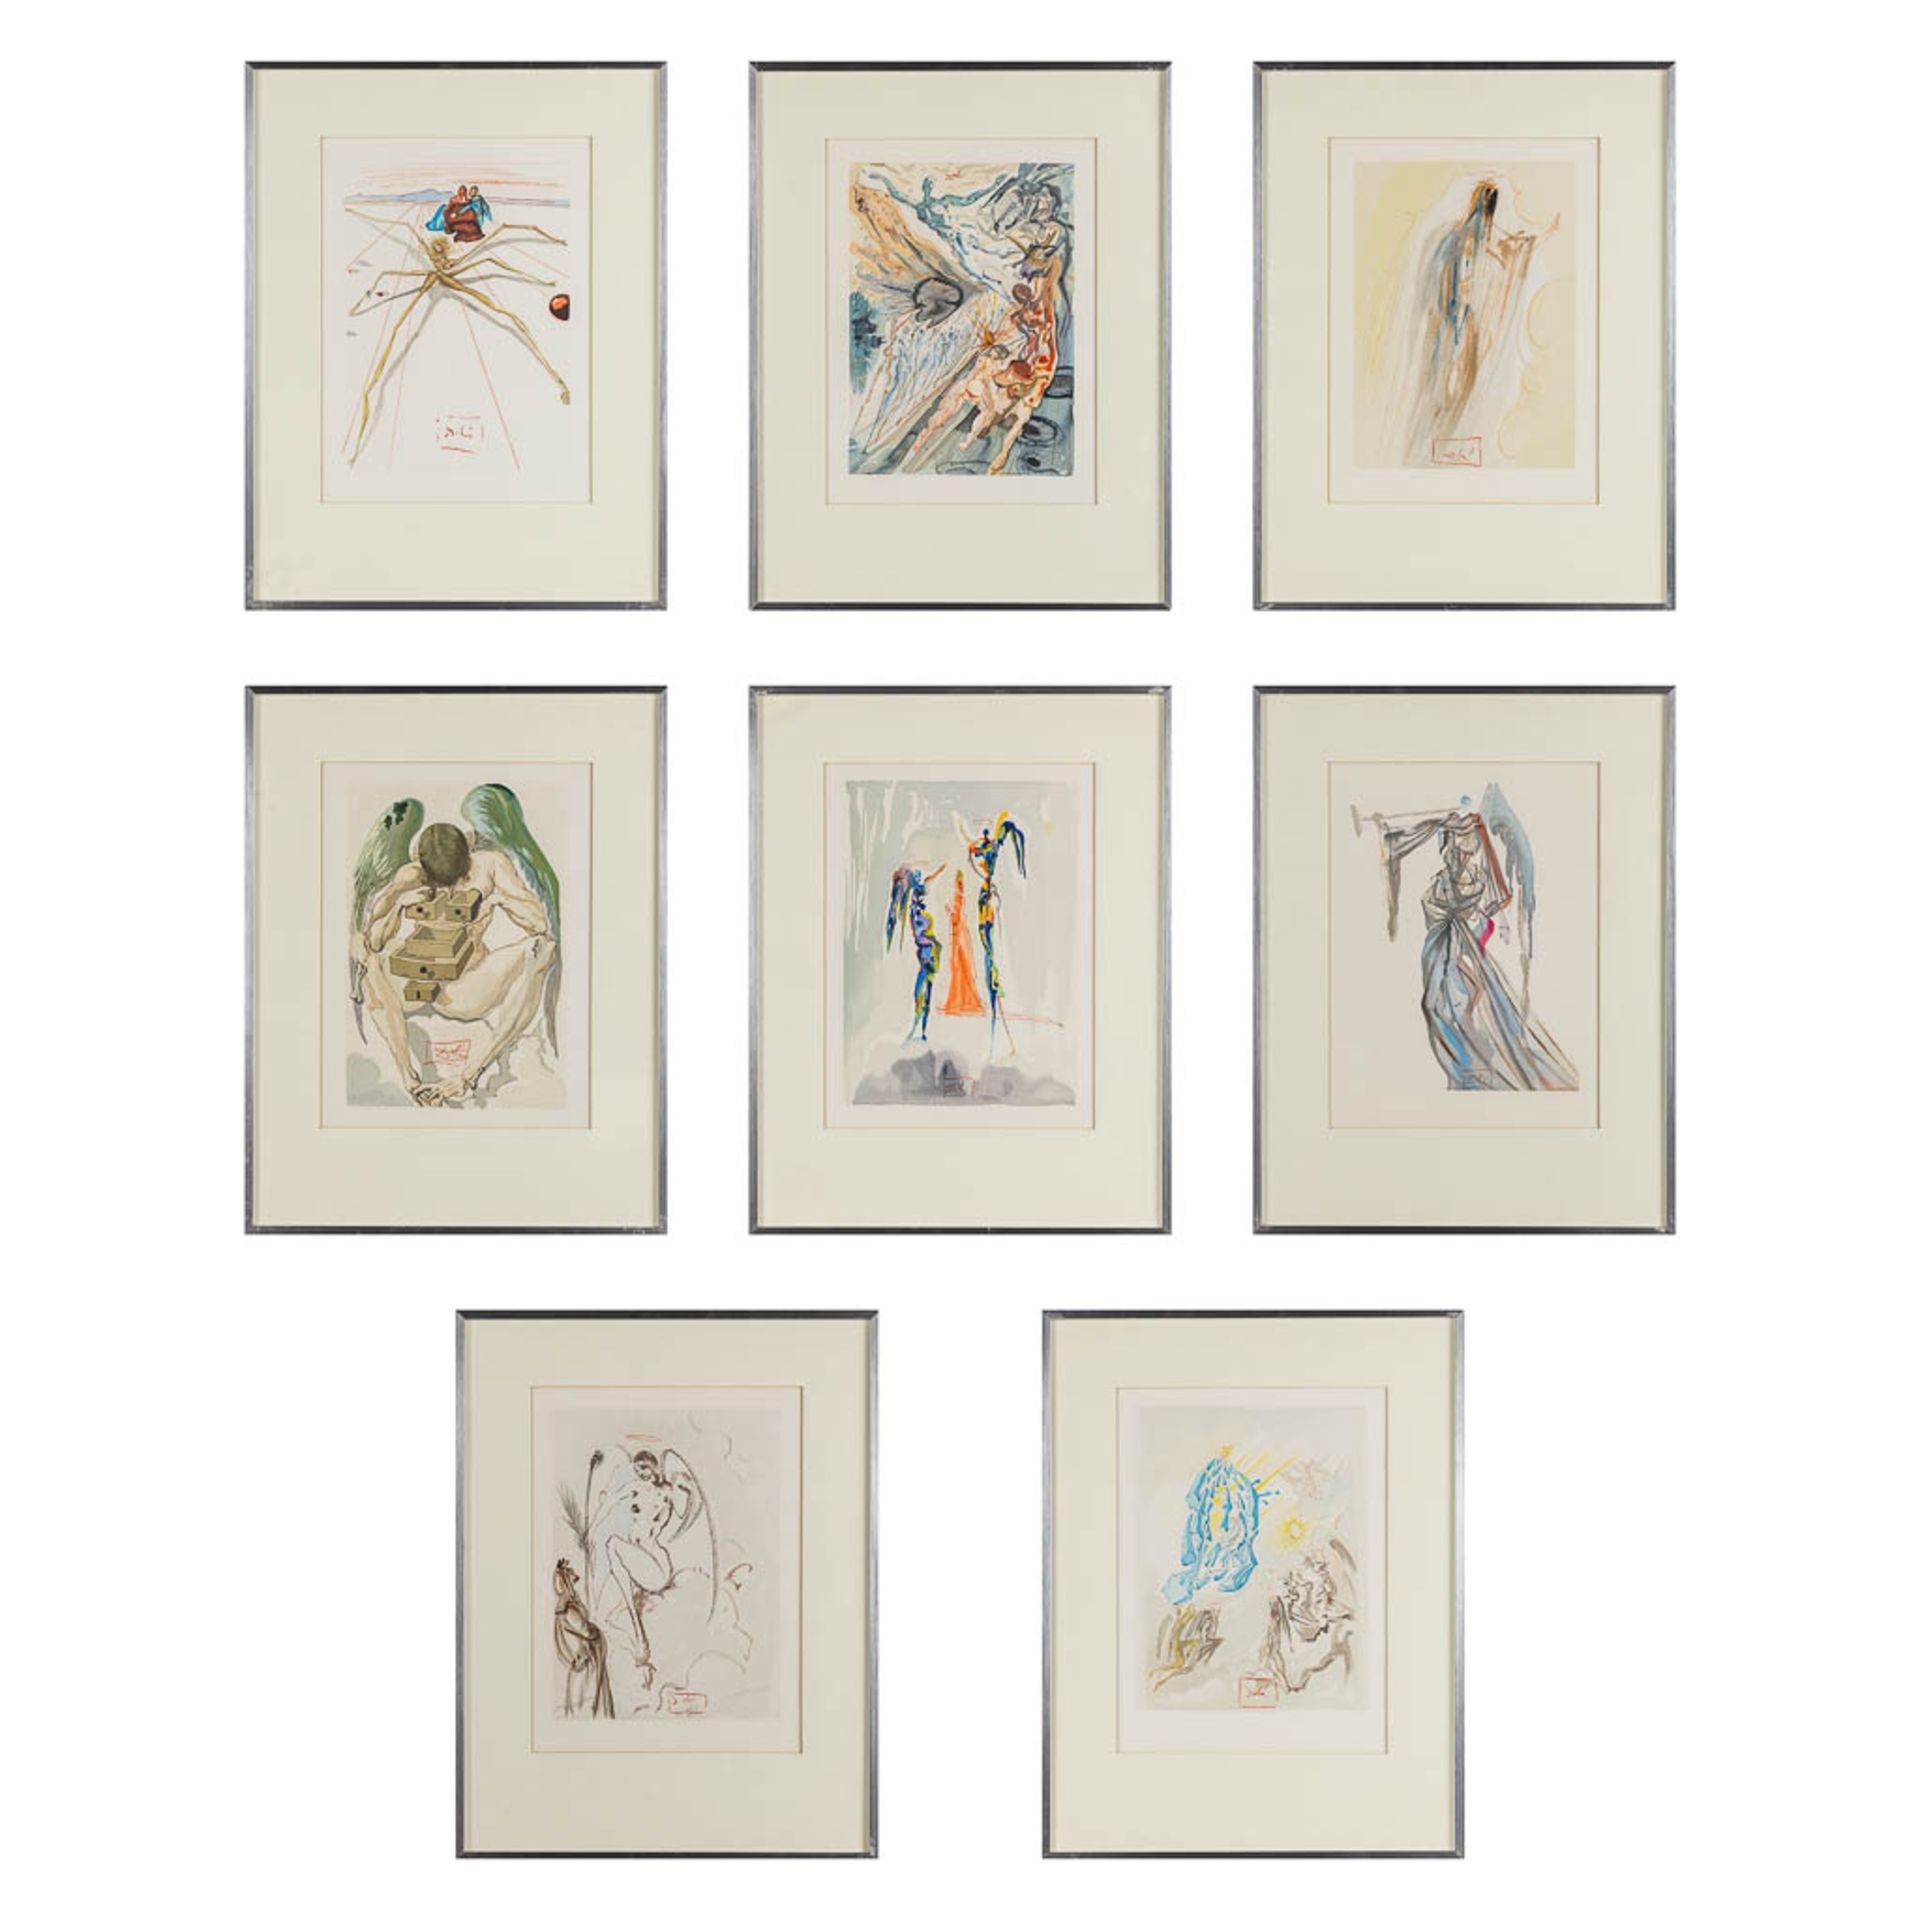 Salvador DALI (1904-1989) 'Dante Alegieri: Divine Comedy', a set of 8 prints. (W: 29 x H: 29 cm)